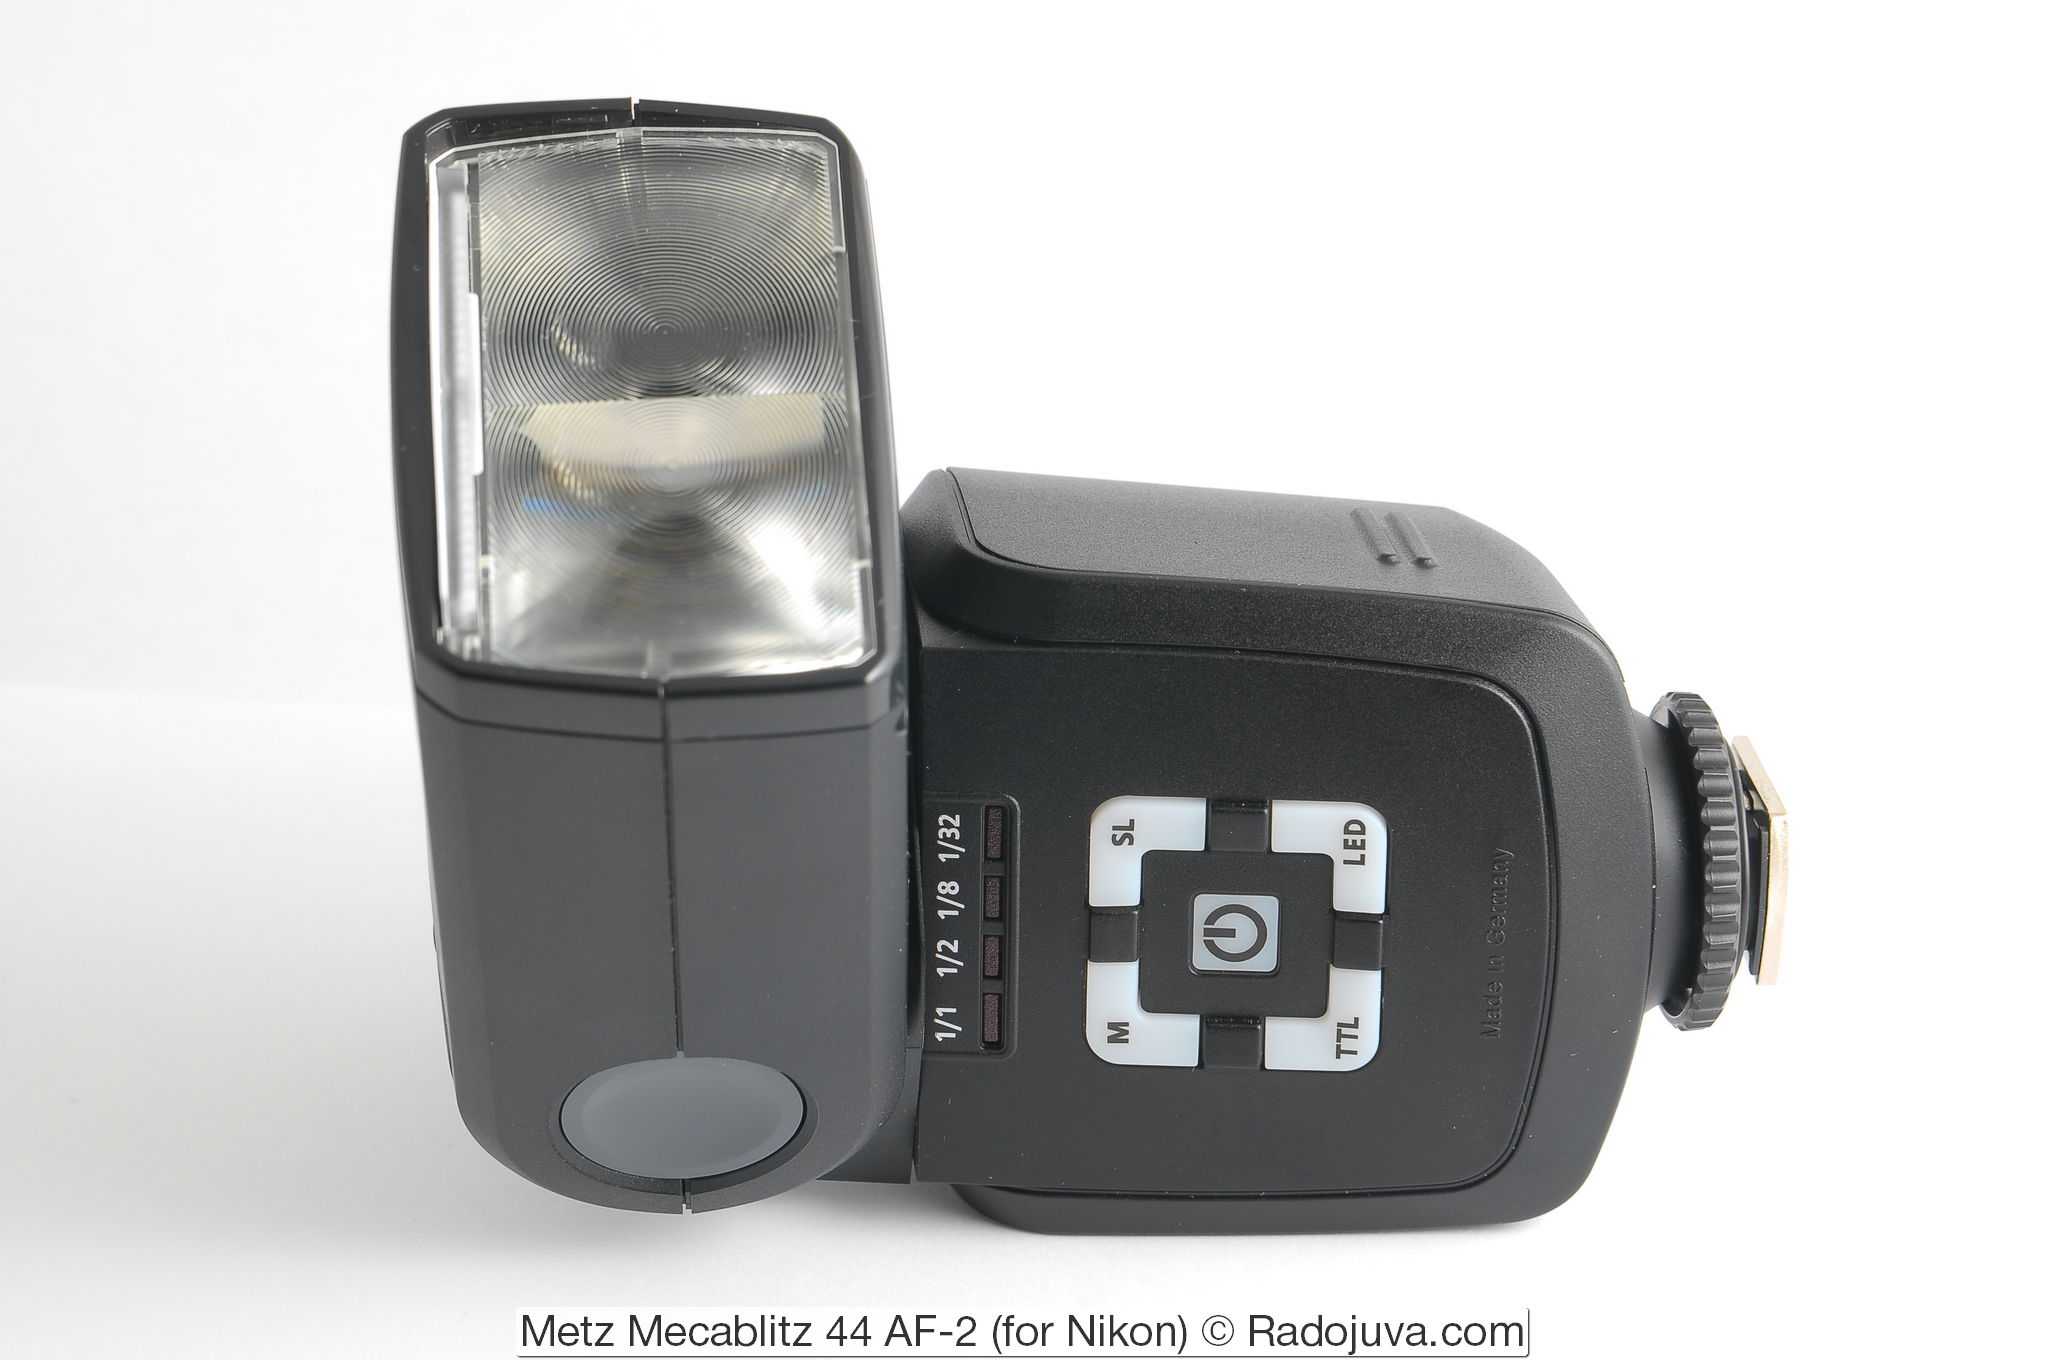 Metz mecablitz 58 af-1 digital for sony - купить , скидки, цена, отзывы, обзор, характеристики - вспышки для фотоаппаратов